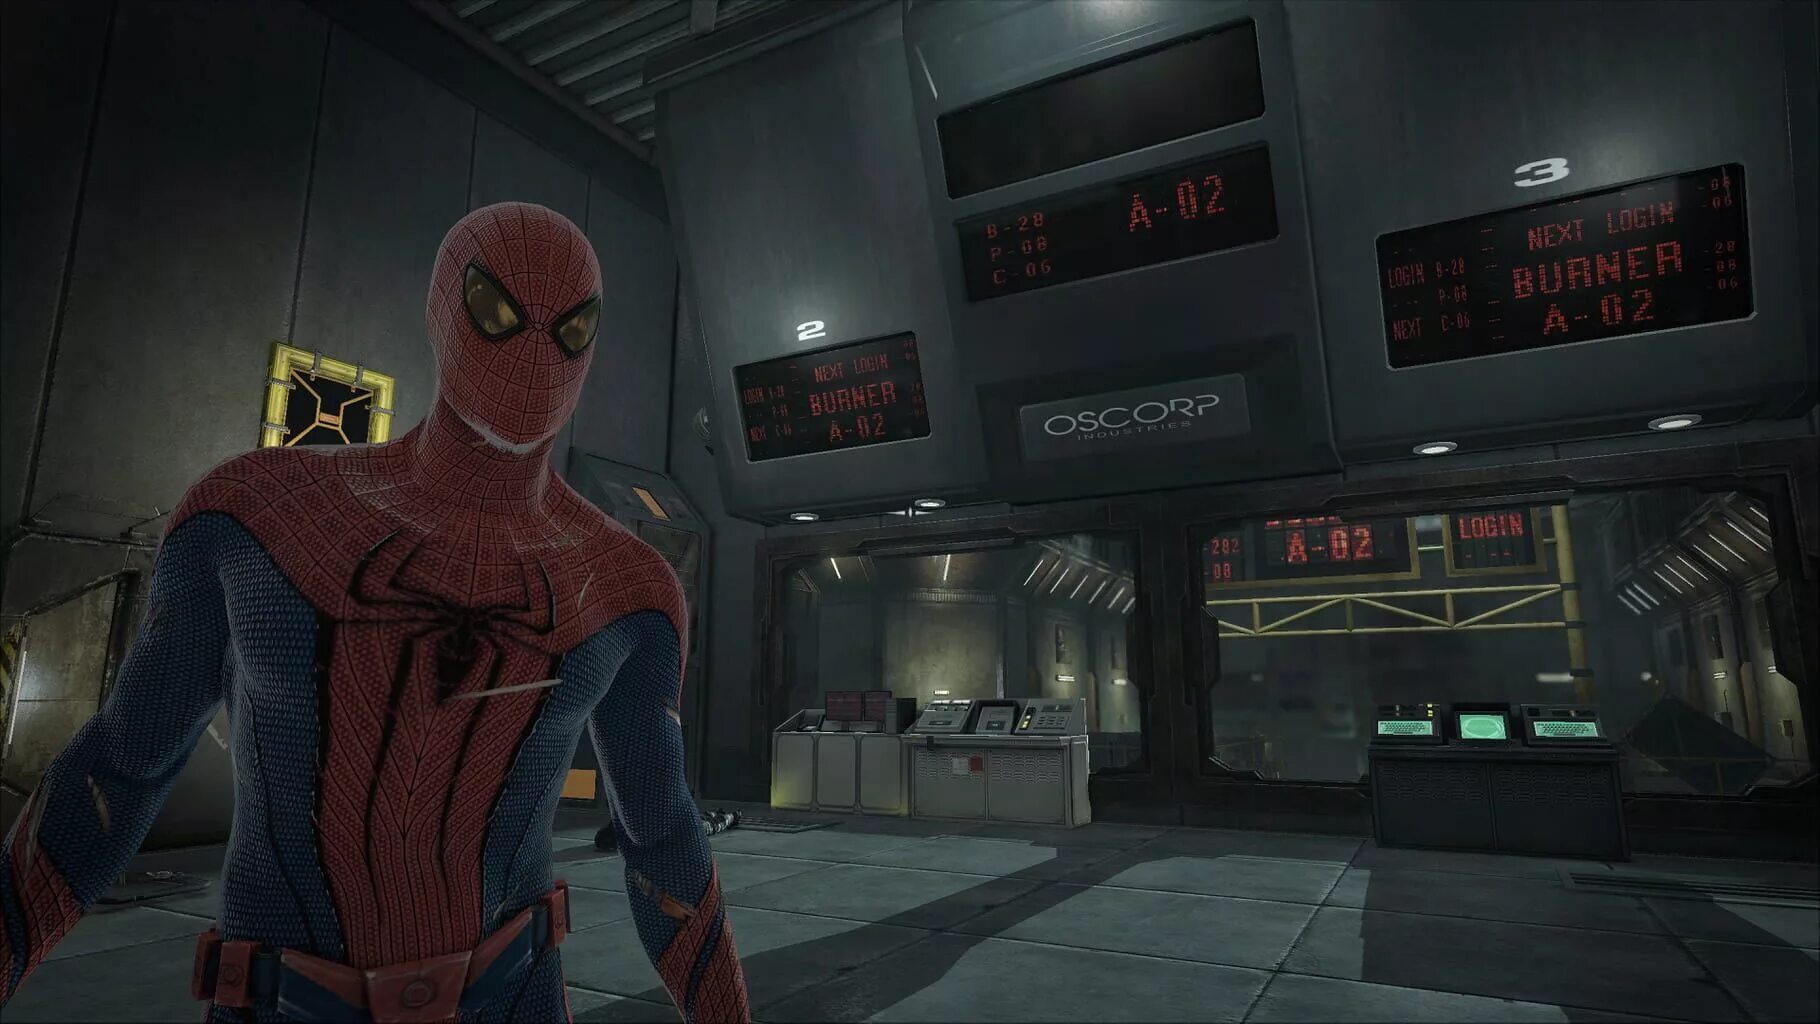 Spider man 2014 игра. The amazing Spider-man игра. Человек паук игра 2012. Новый человек паук игра 2012. The amazing Spider-man (игра, 2015).